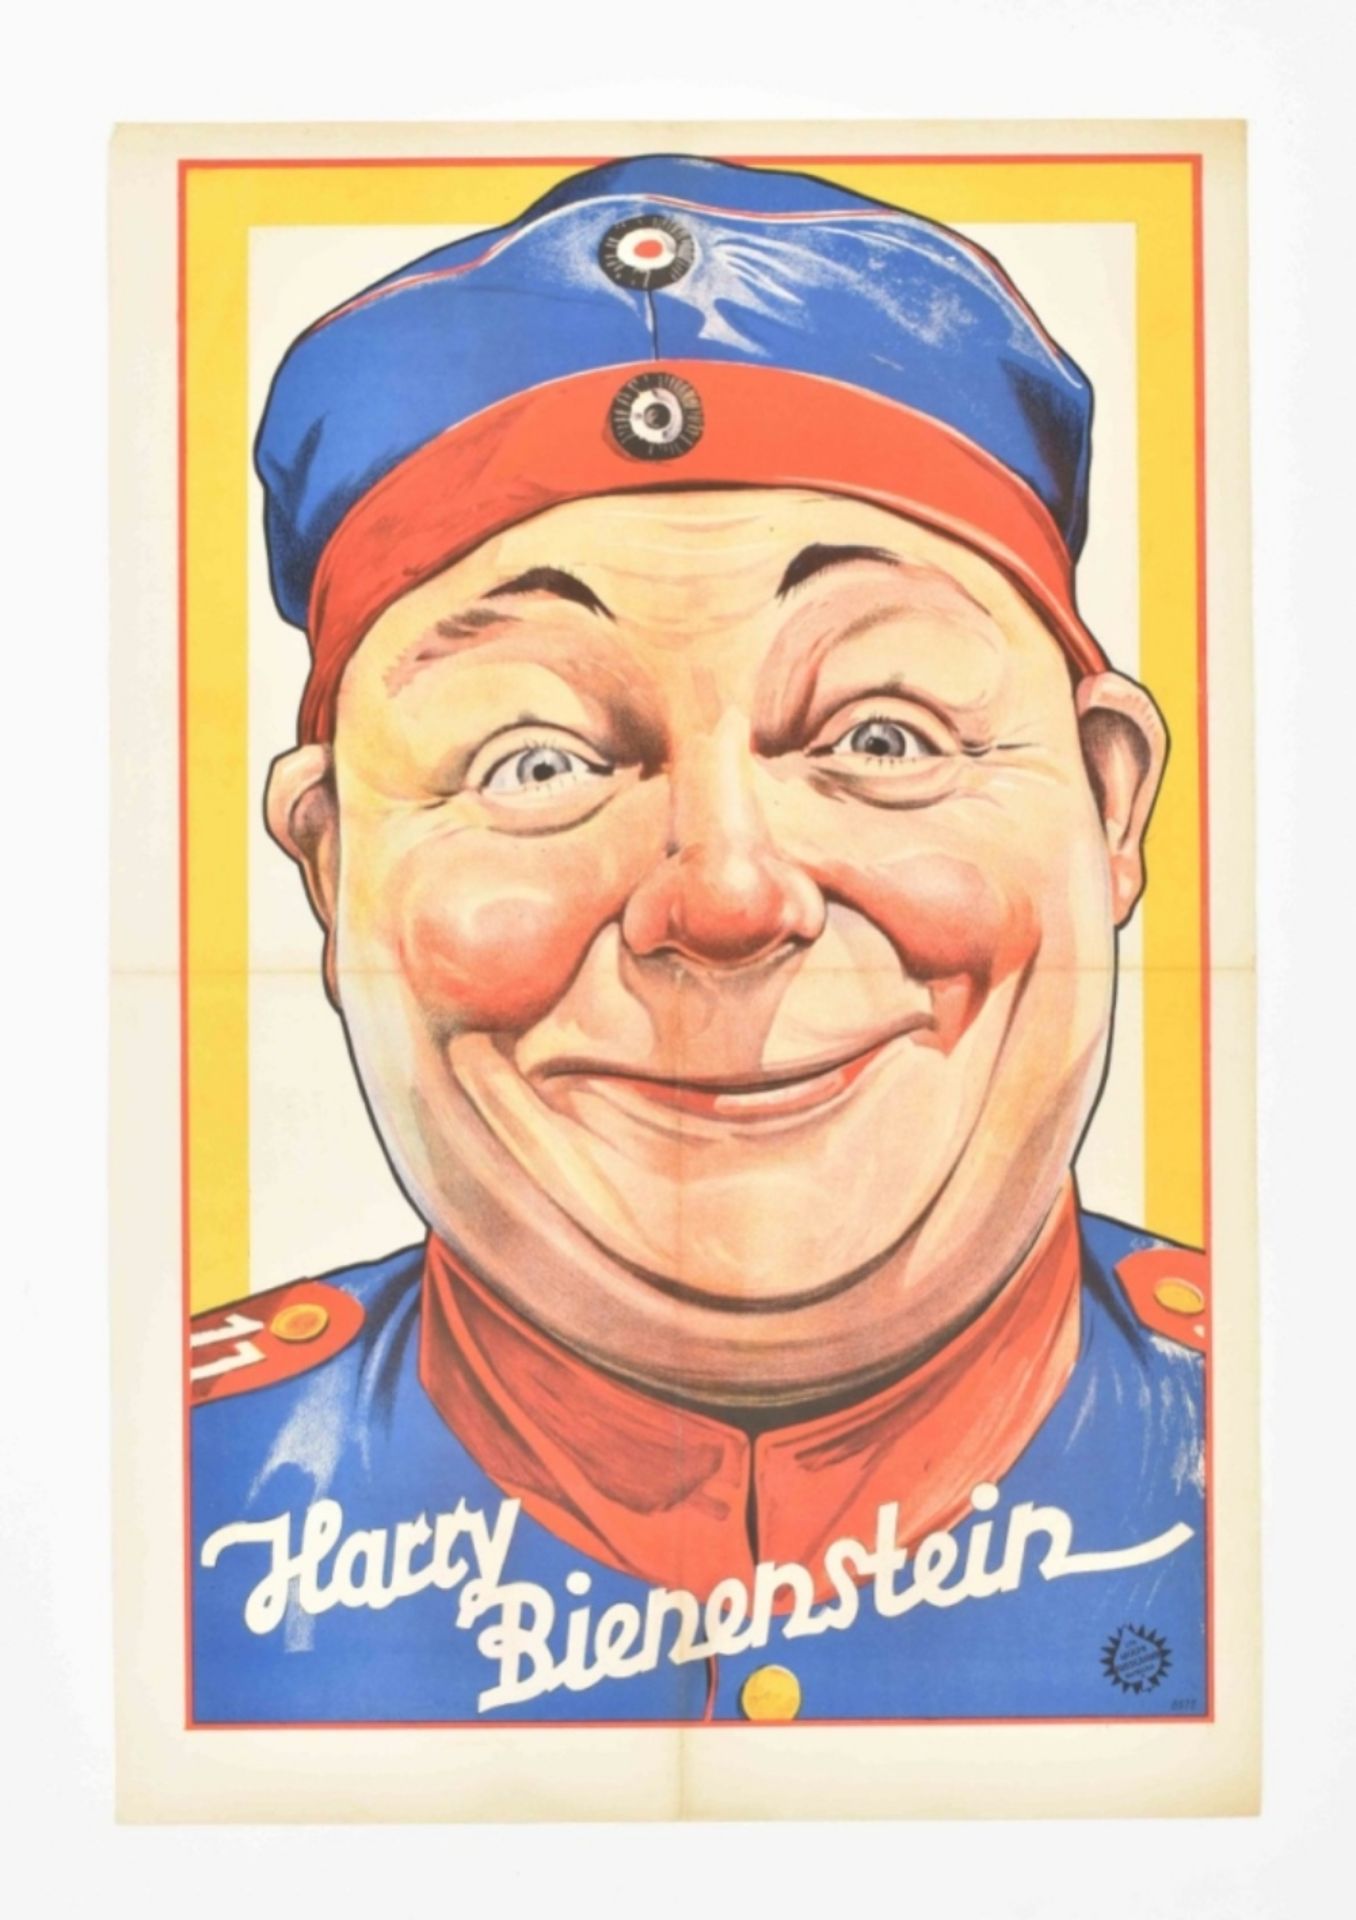 [Clowns] [Vaudeville] Harry Bienenstein Friedländer, Hamburg, 1931 - Image 4 of 4